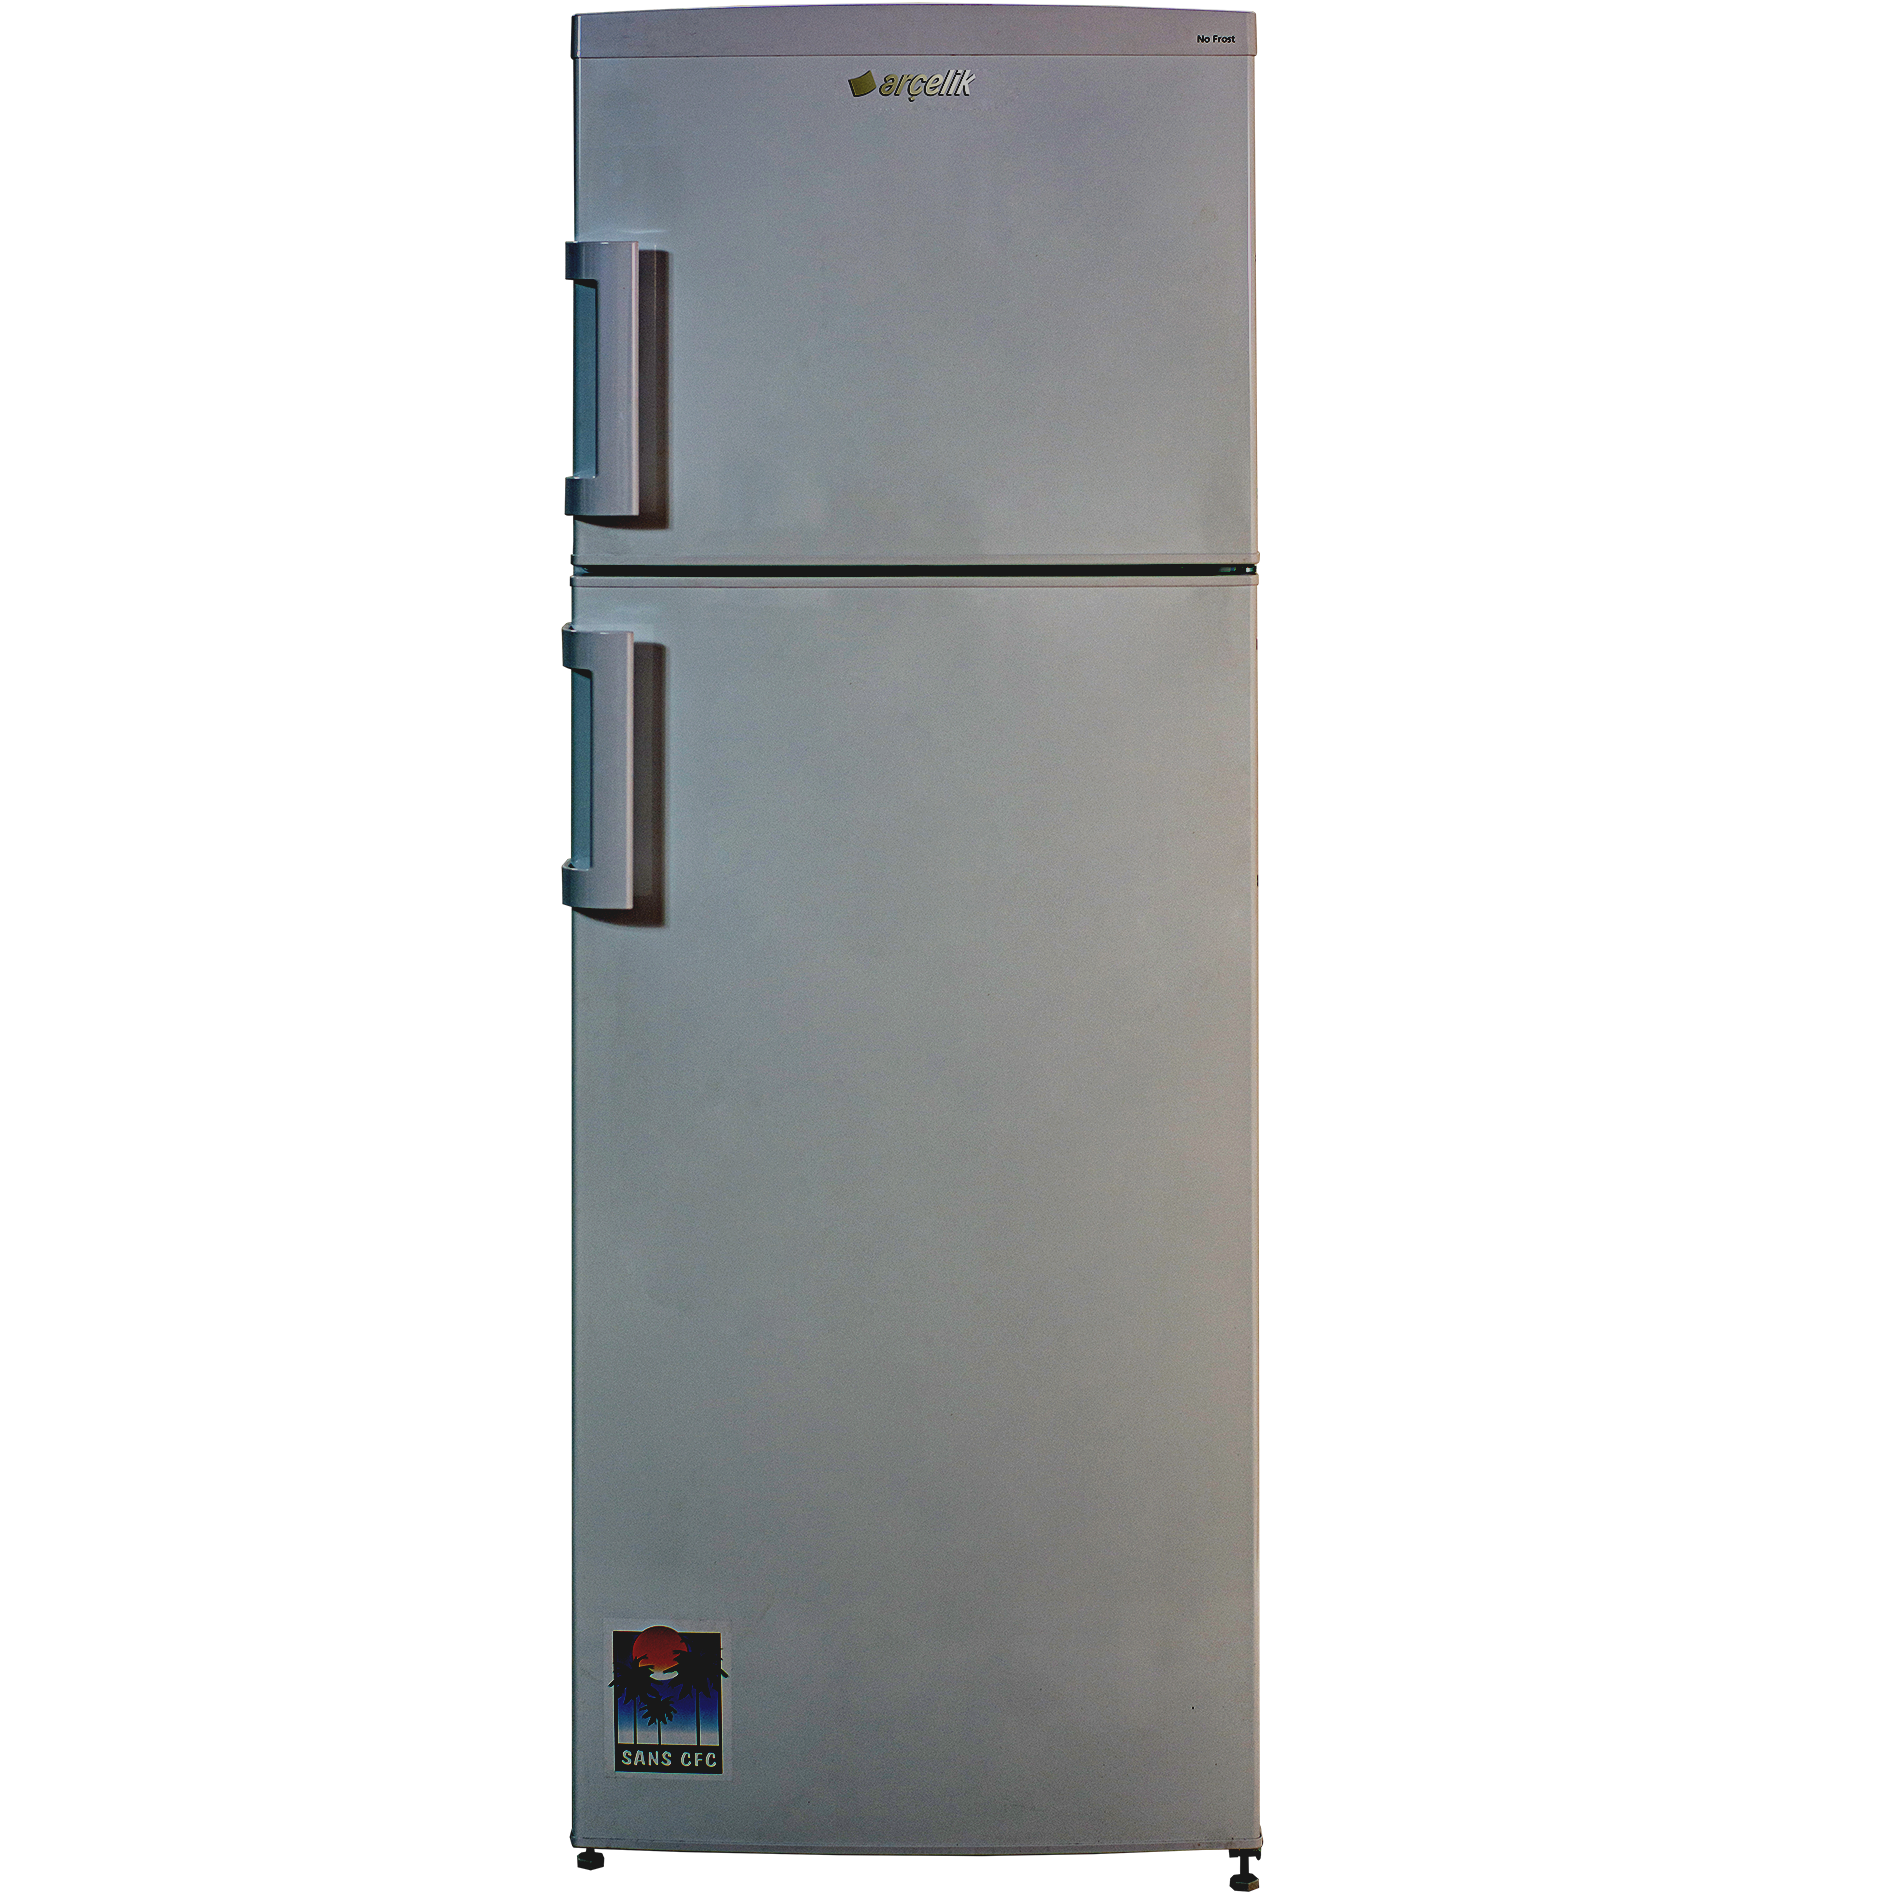 Réfrigérateur NOFROST ARCELIK 350 L -Silver - RDX 3850 S